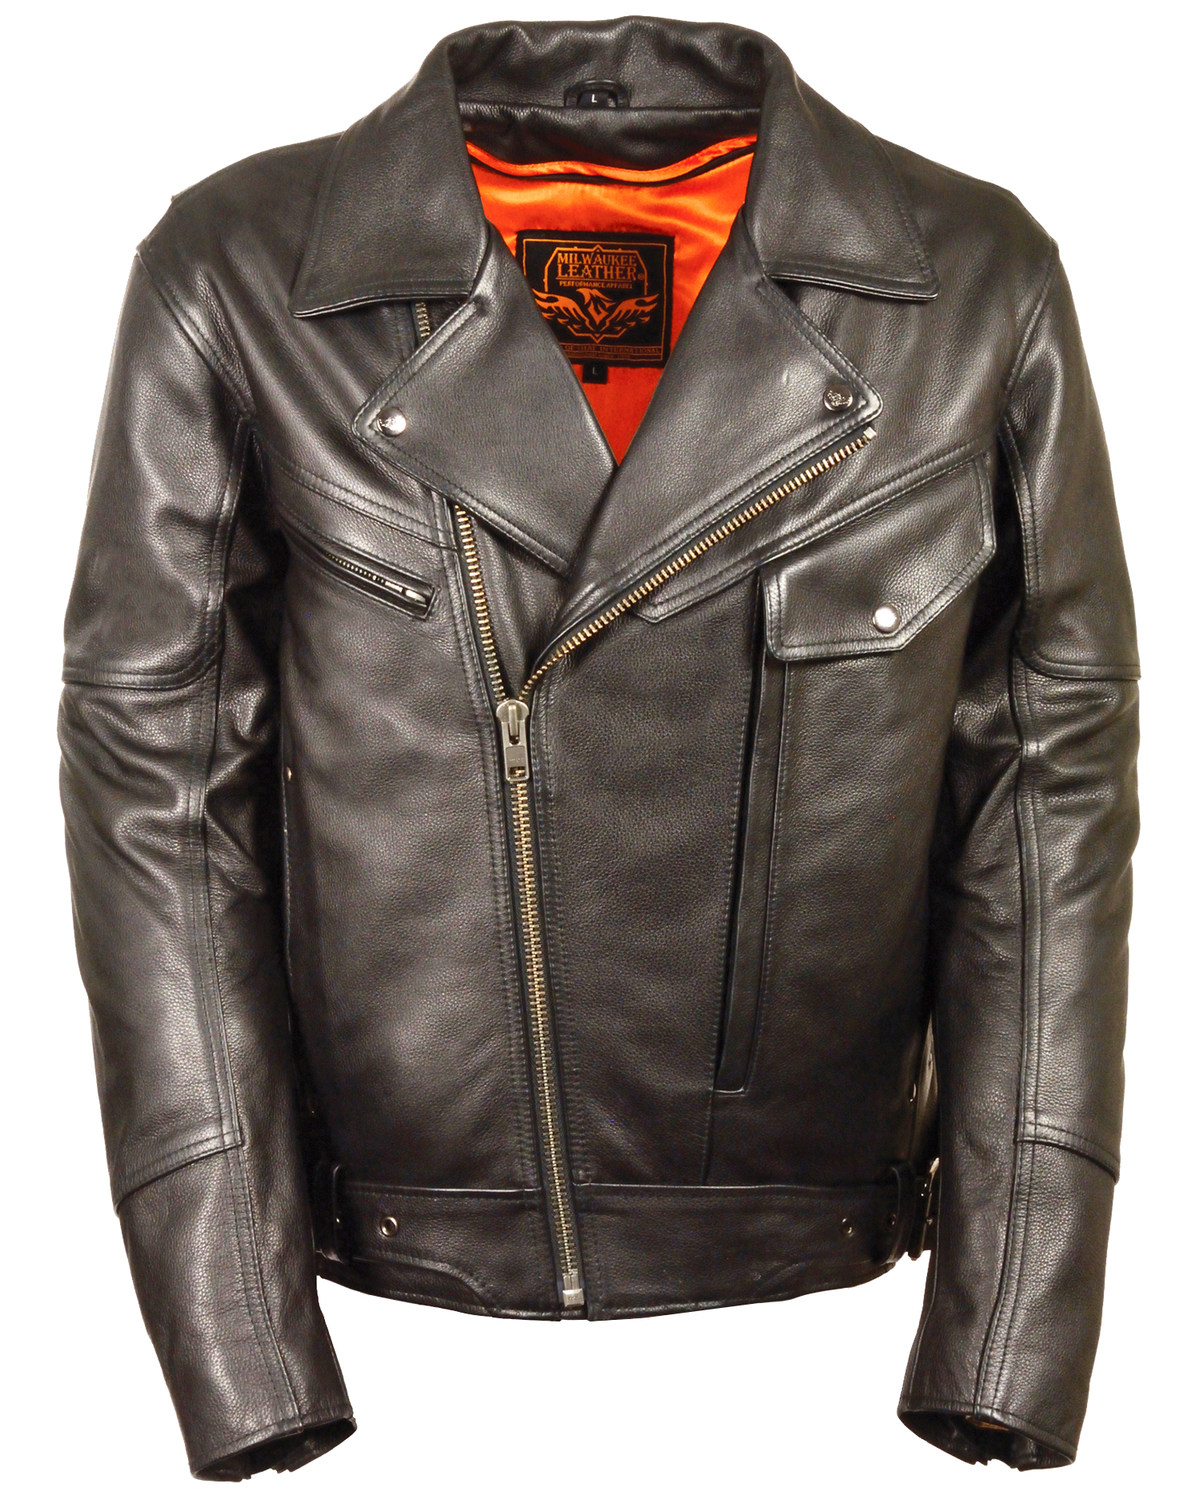 Milwaukee Leather Men's Side Belt Utility Pocket Motorcycle Jacket